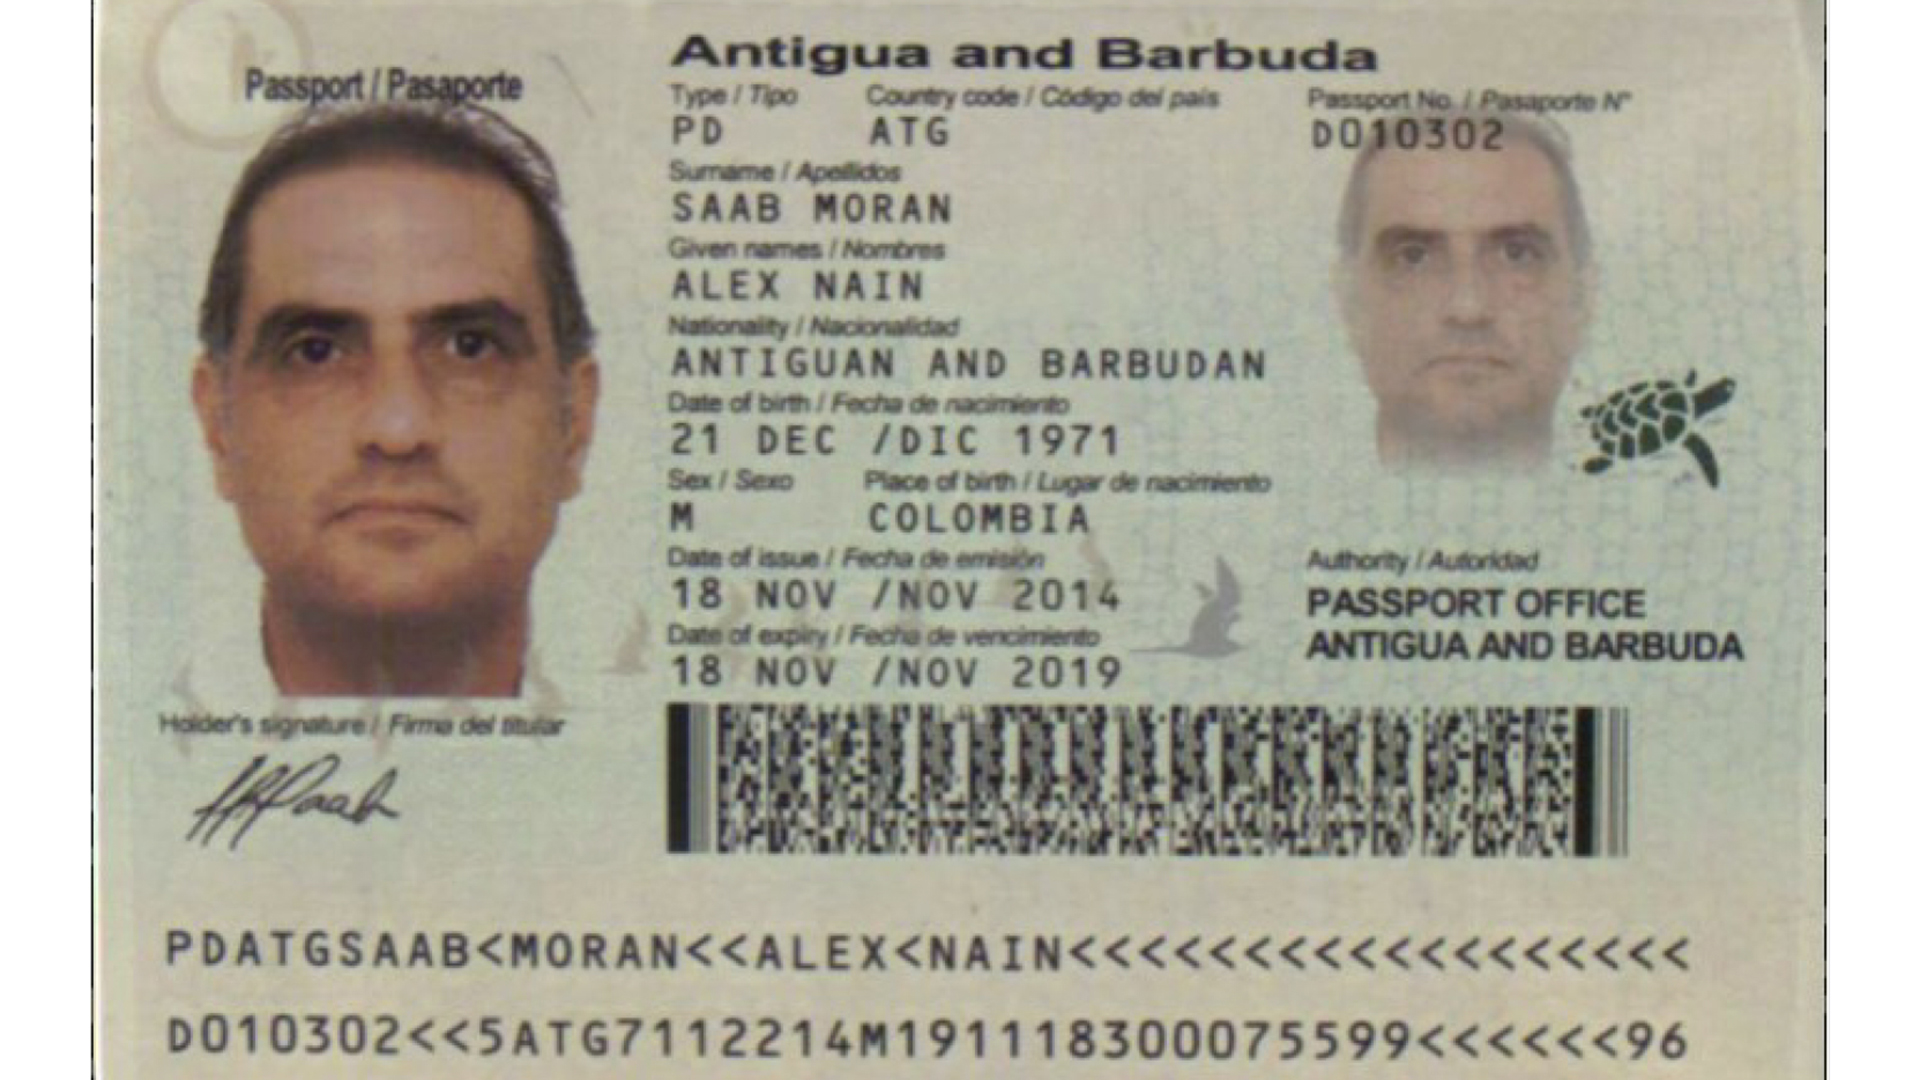 El pasaporte de Antigua y Barbuda de Alex Nain Saab Moran